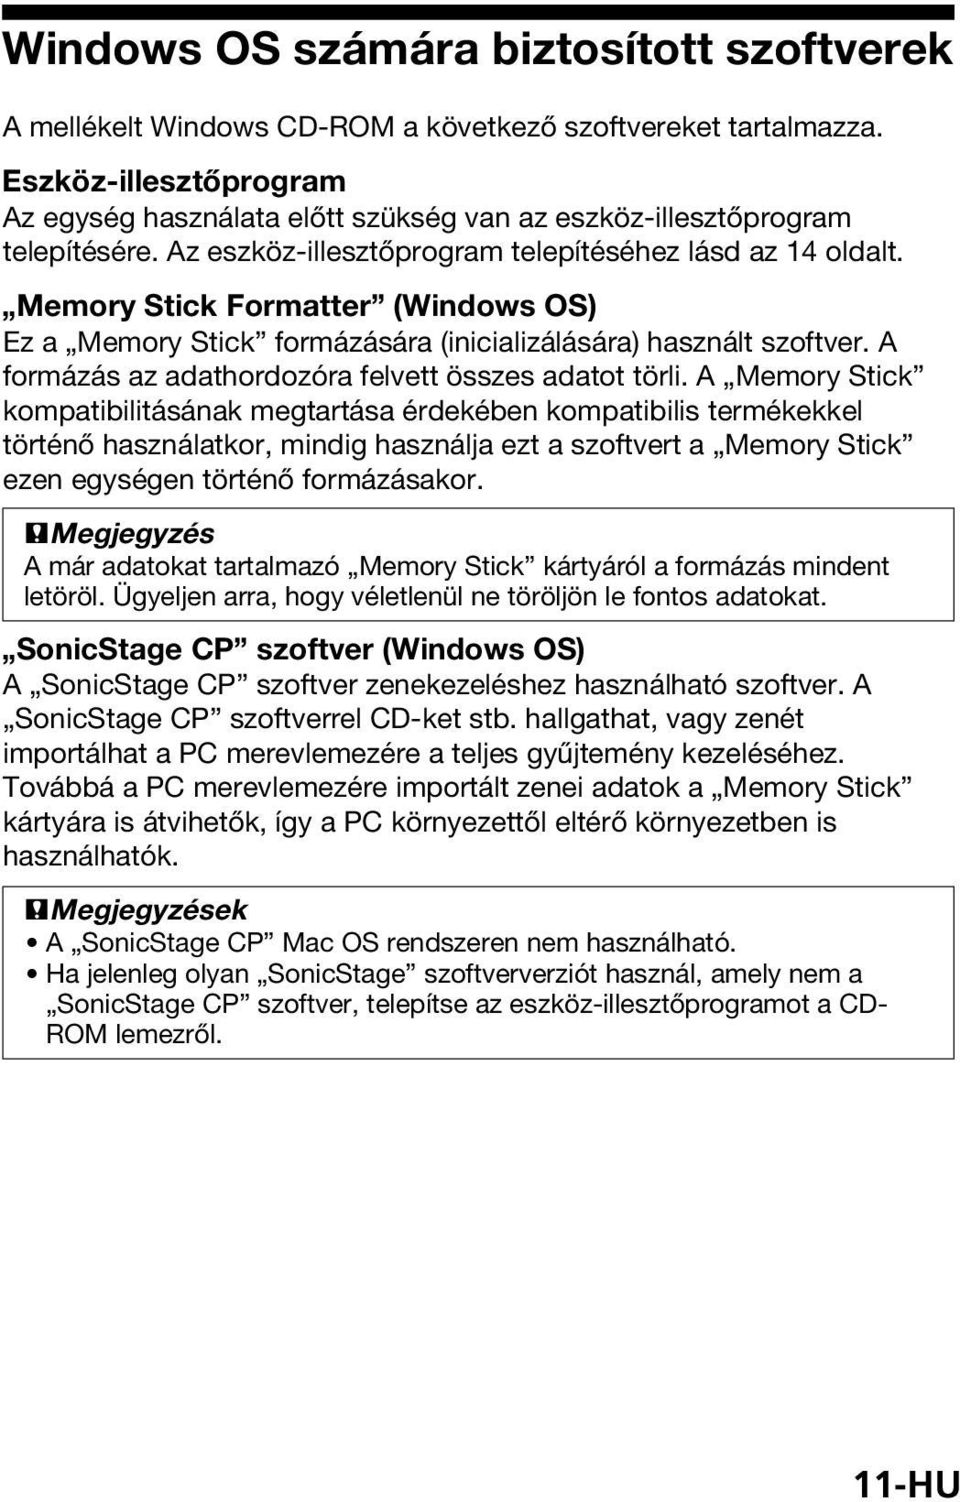 Memory Stick Formatter (Windows OS) Ez a Memory Stick formázására (inicializálására) használt szoftver. A formázás az adathordozóra felvett összes adatot törli.